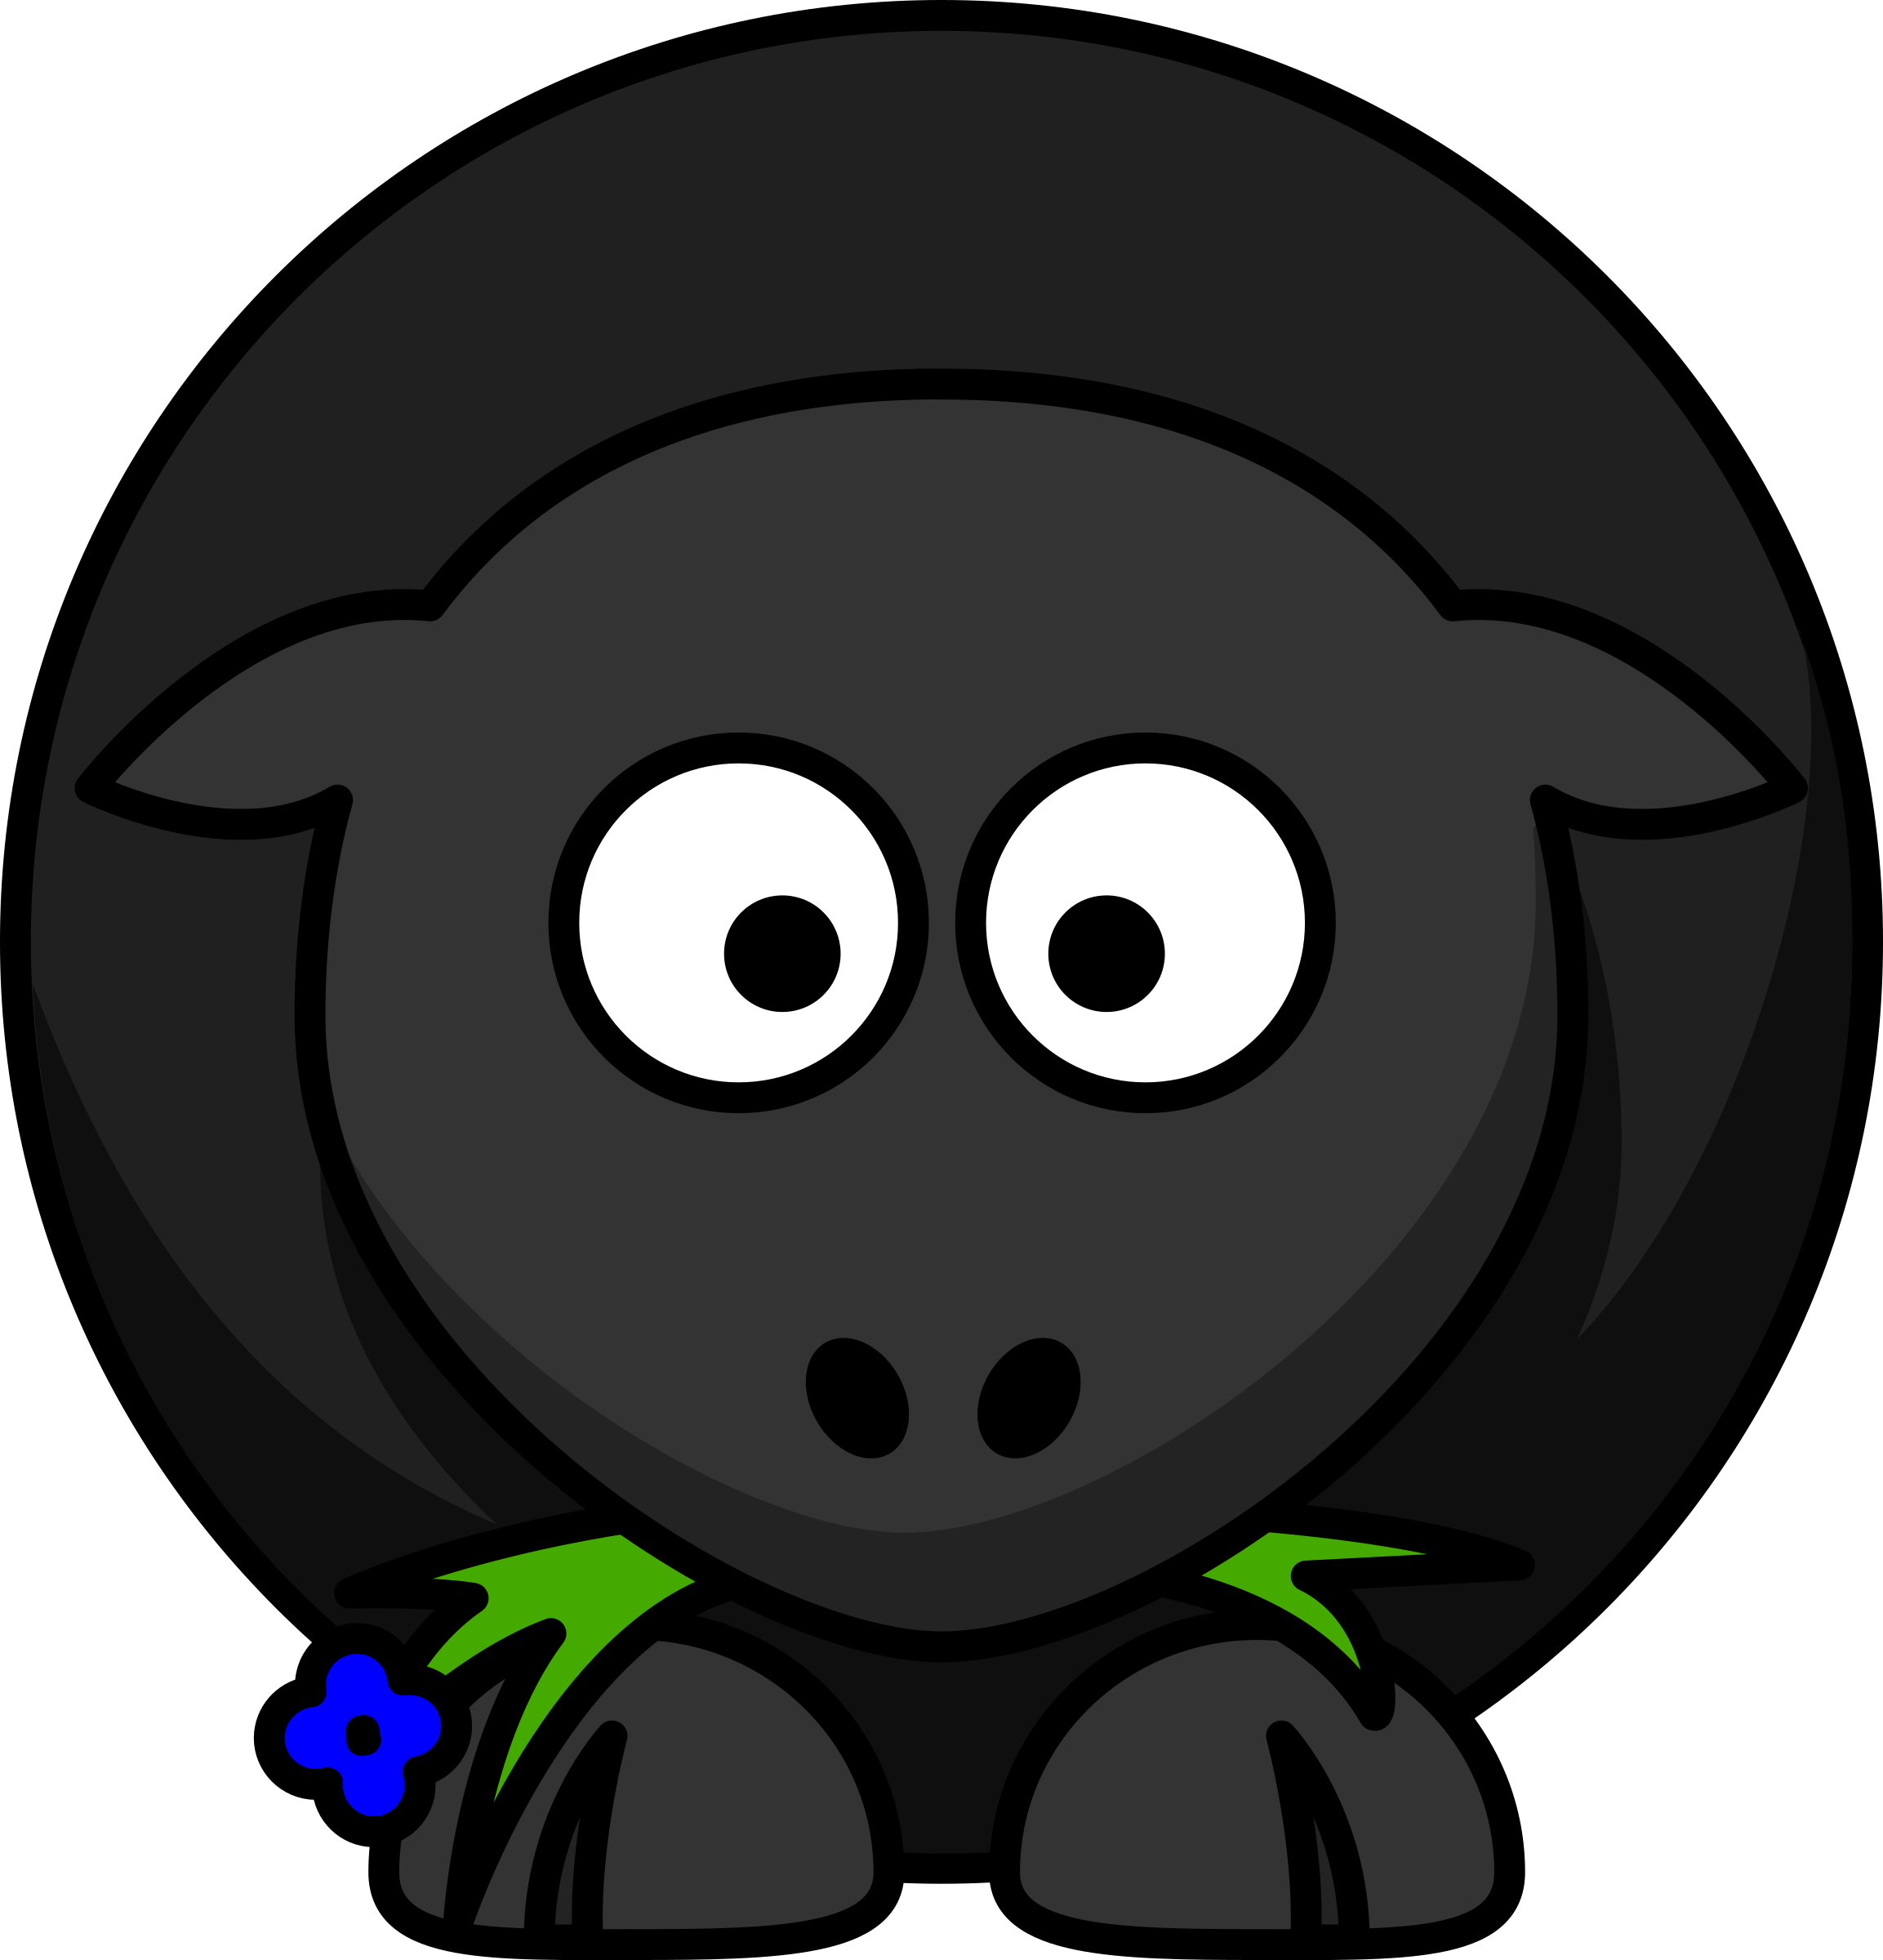 Clipart - Cartoon Black Sheep